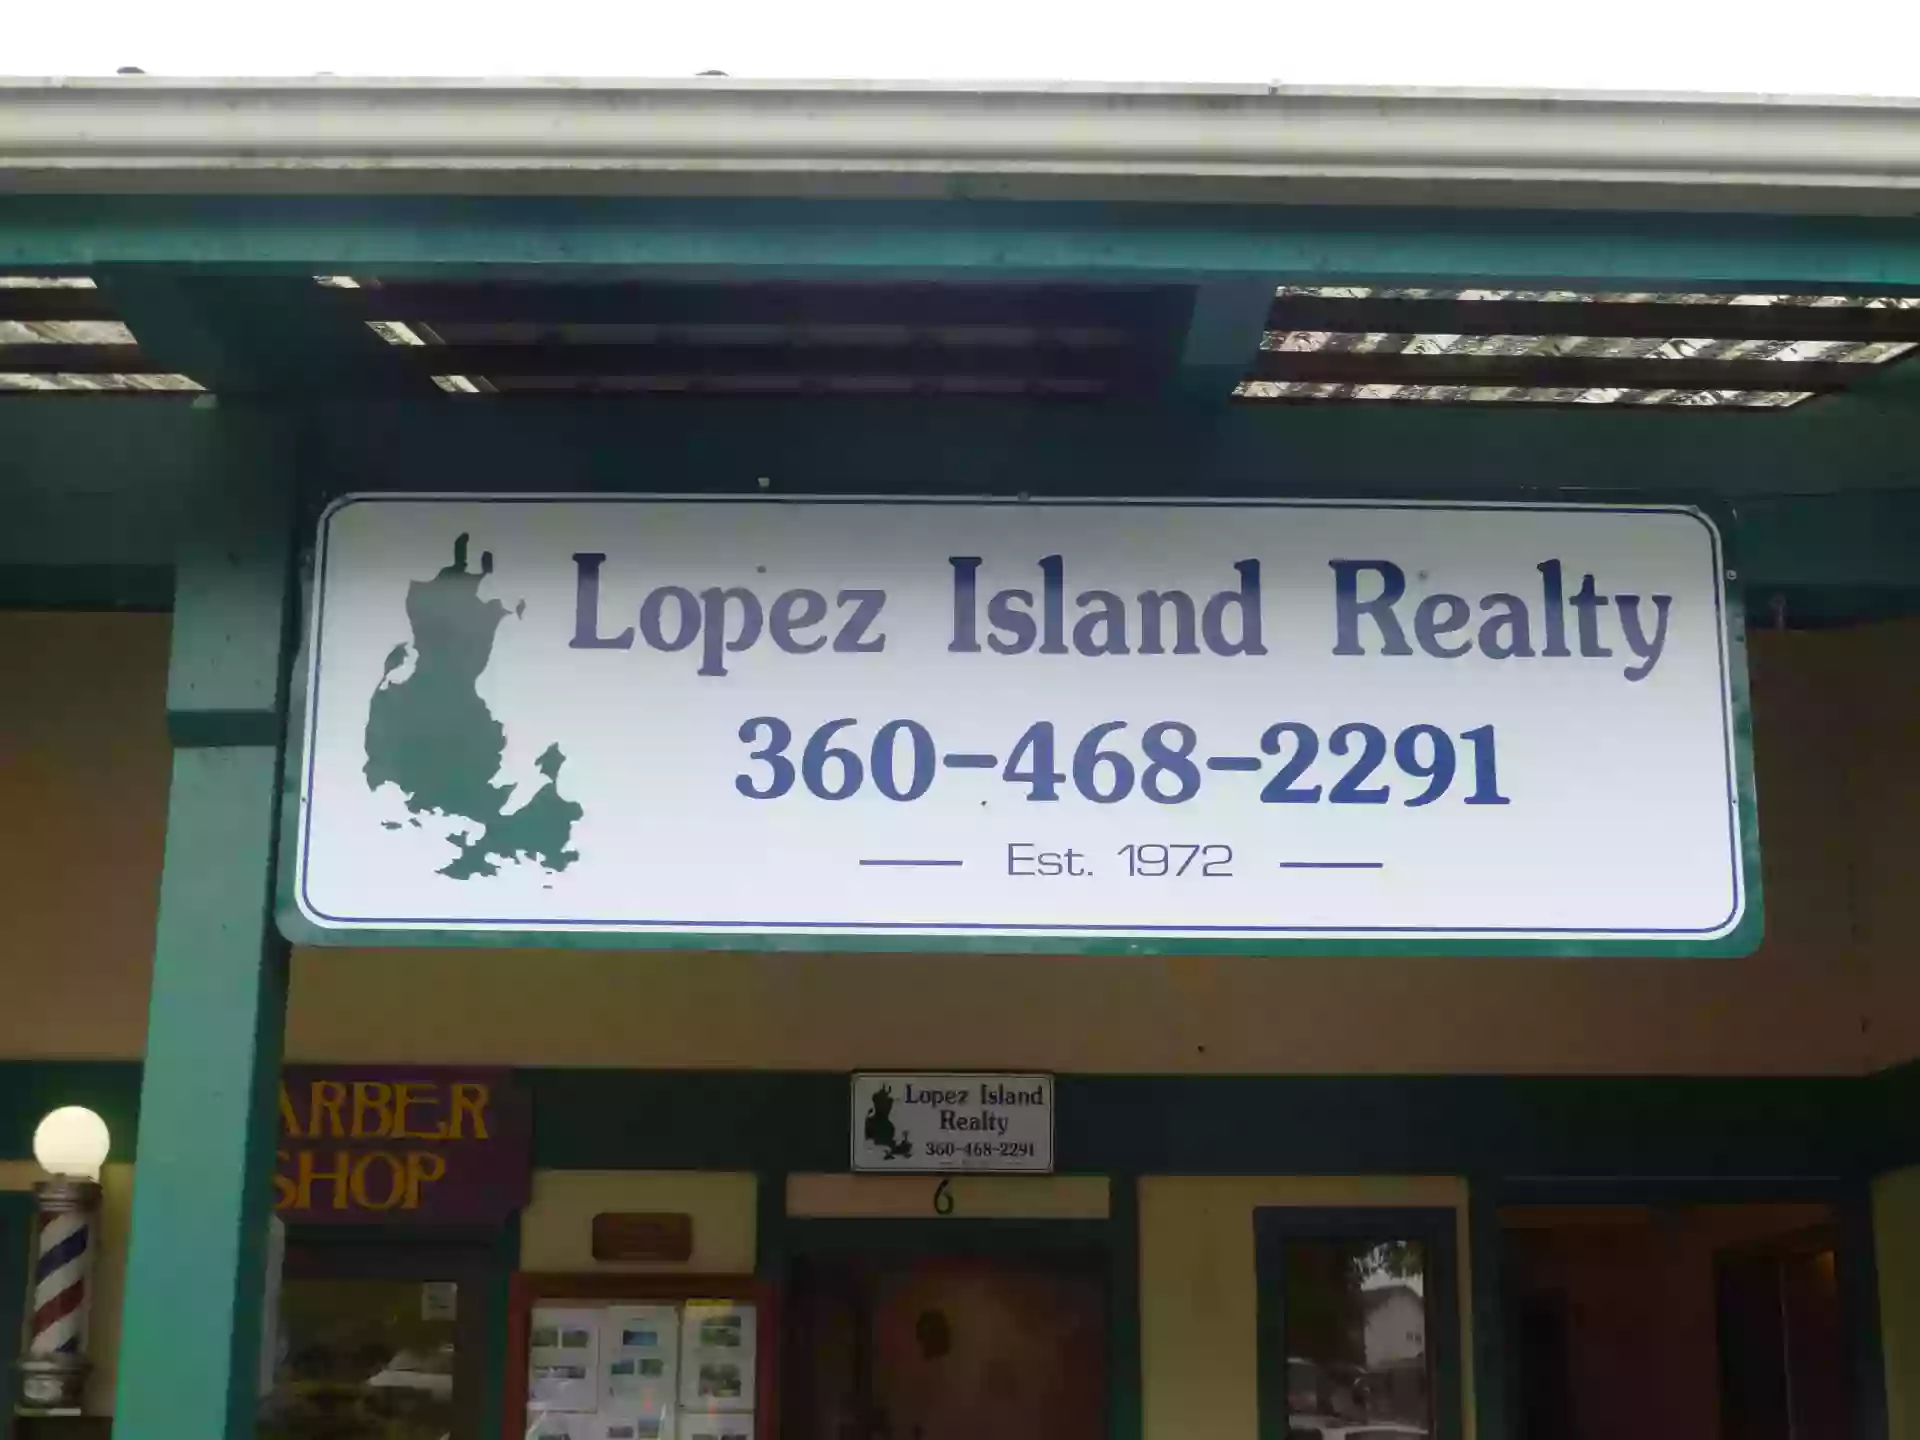 Gary Berg, Lopez Island Realty